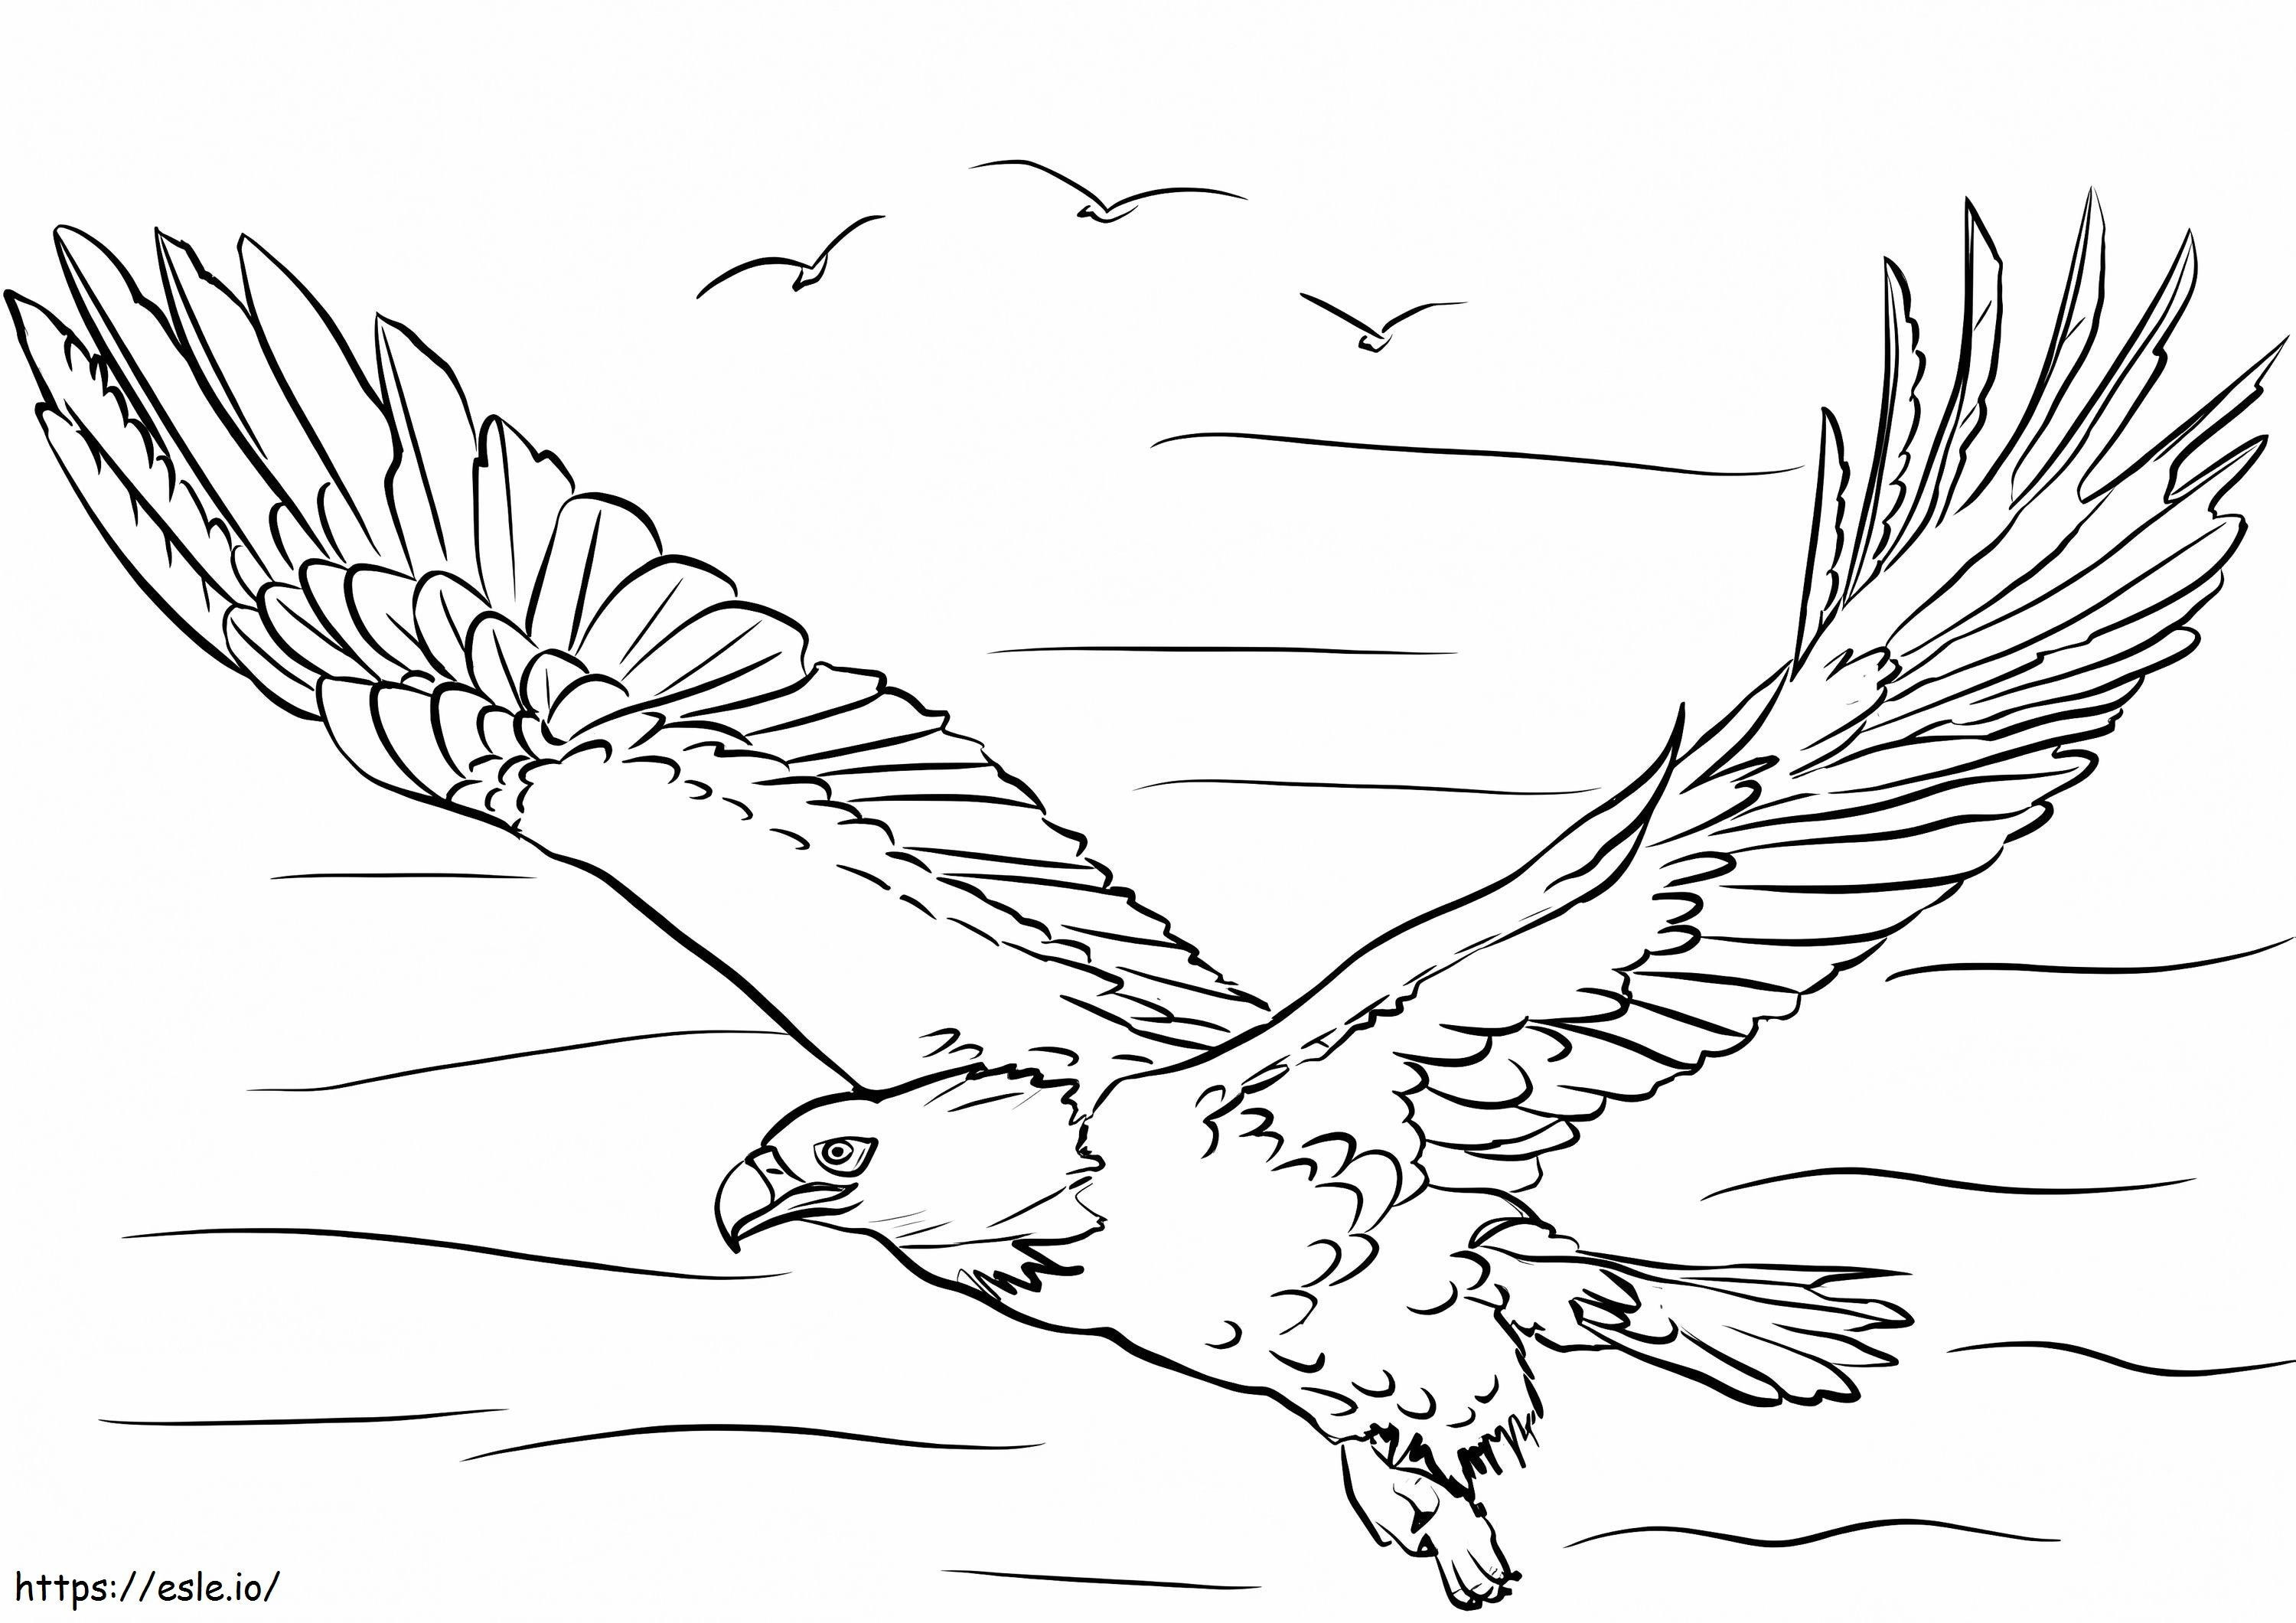 Weißkopfseeadler 1 ausmalbilder